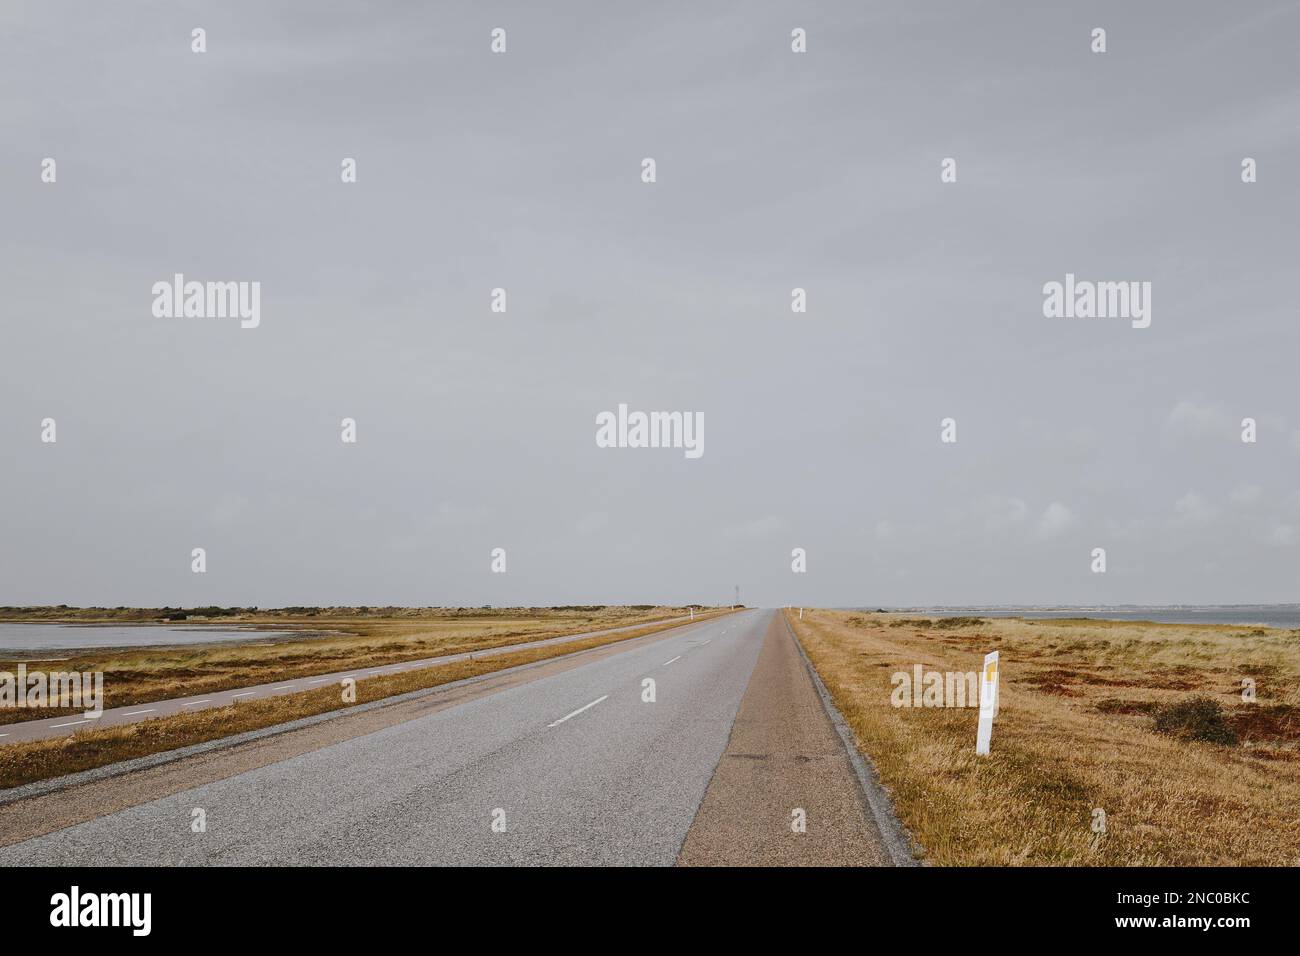 Orizzonte piatto e strada asfaltata infinita che non porta da nessuna parte. Agger Tange, Danimarca. Foto Stock